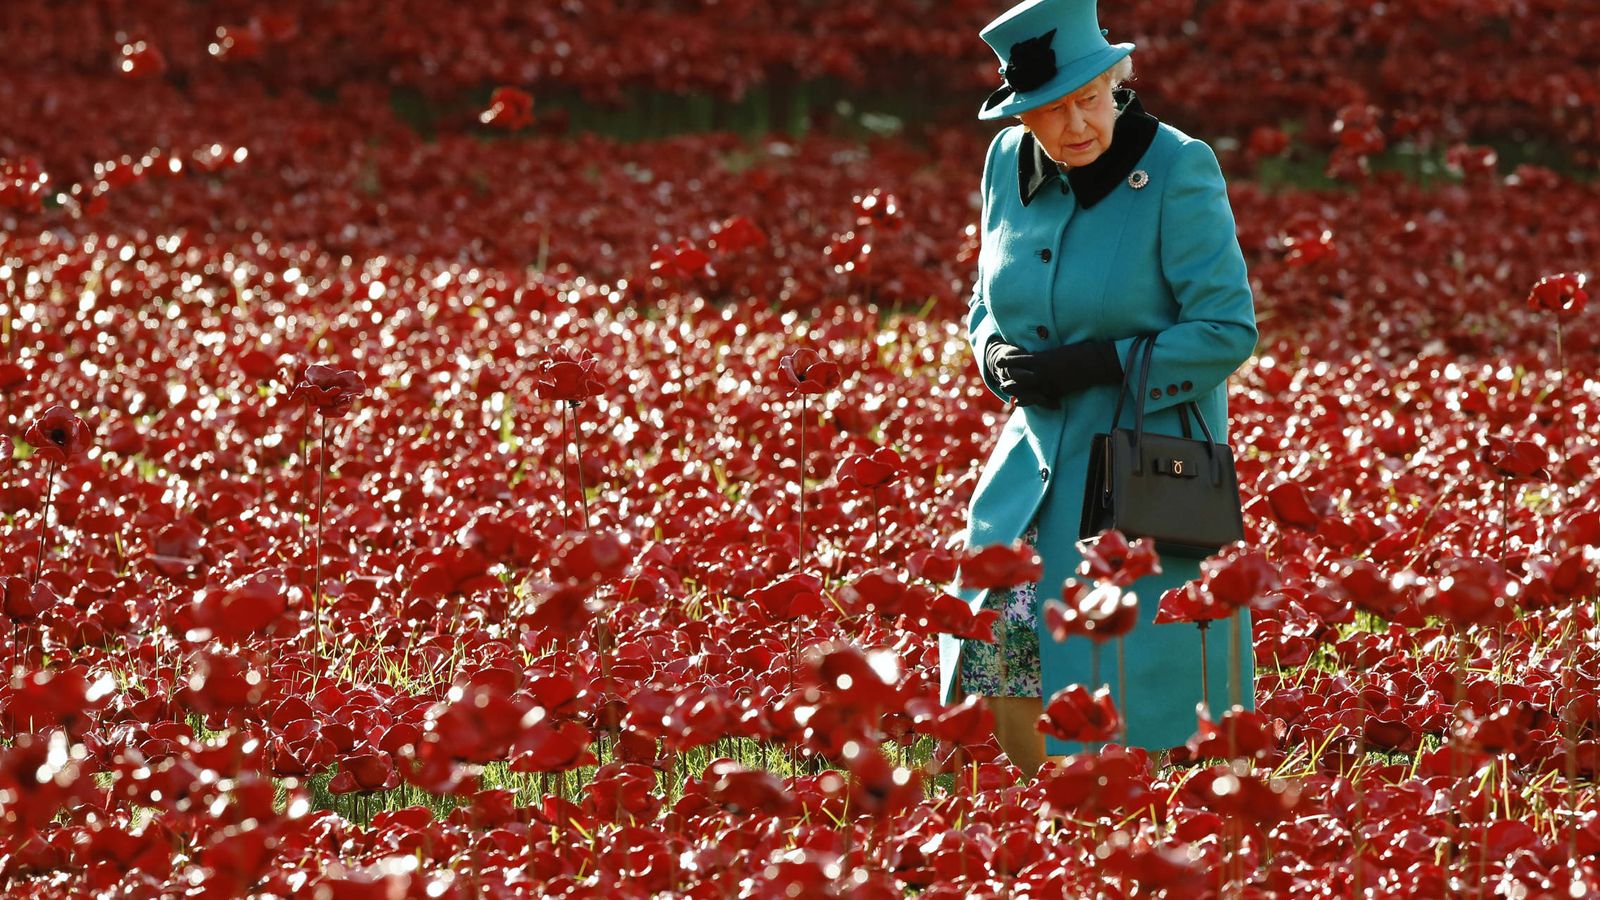 Foto: La reina Isabel II en una imagen de archivo. (Reuters)